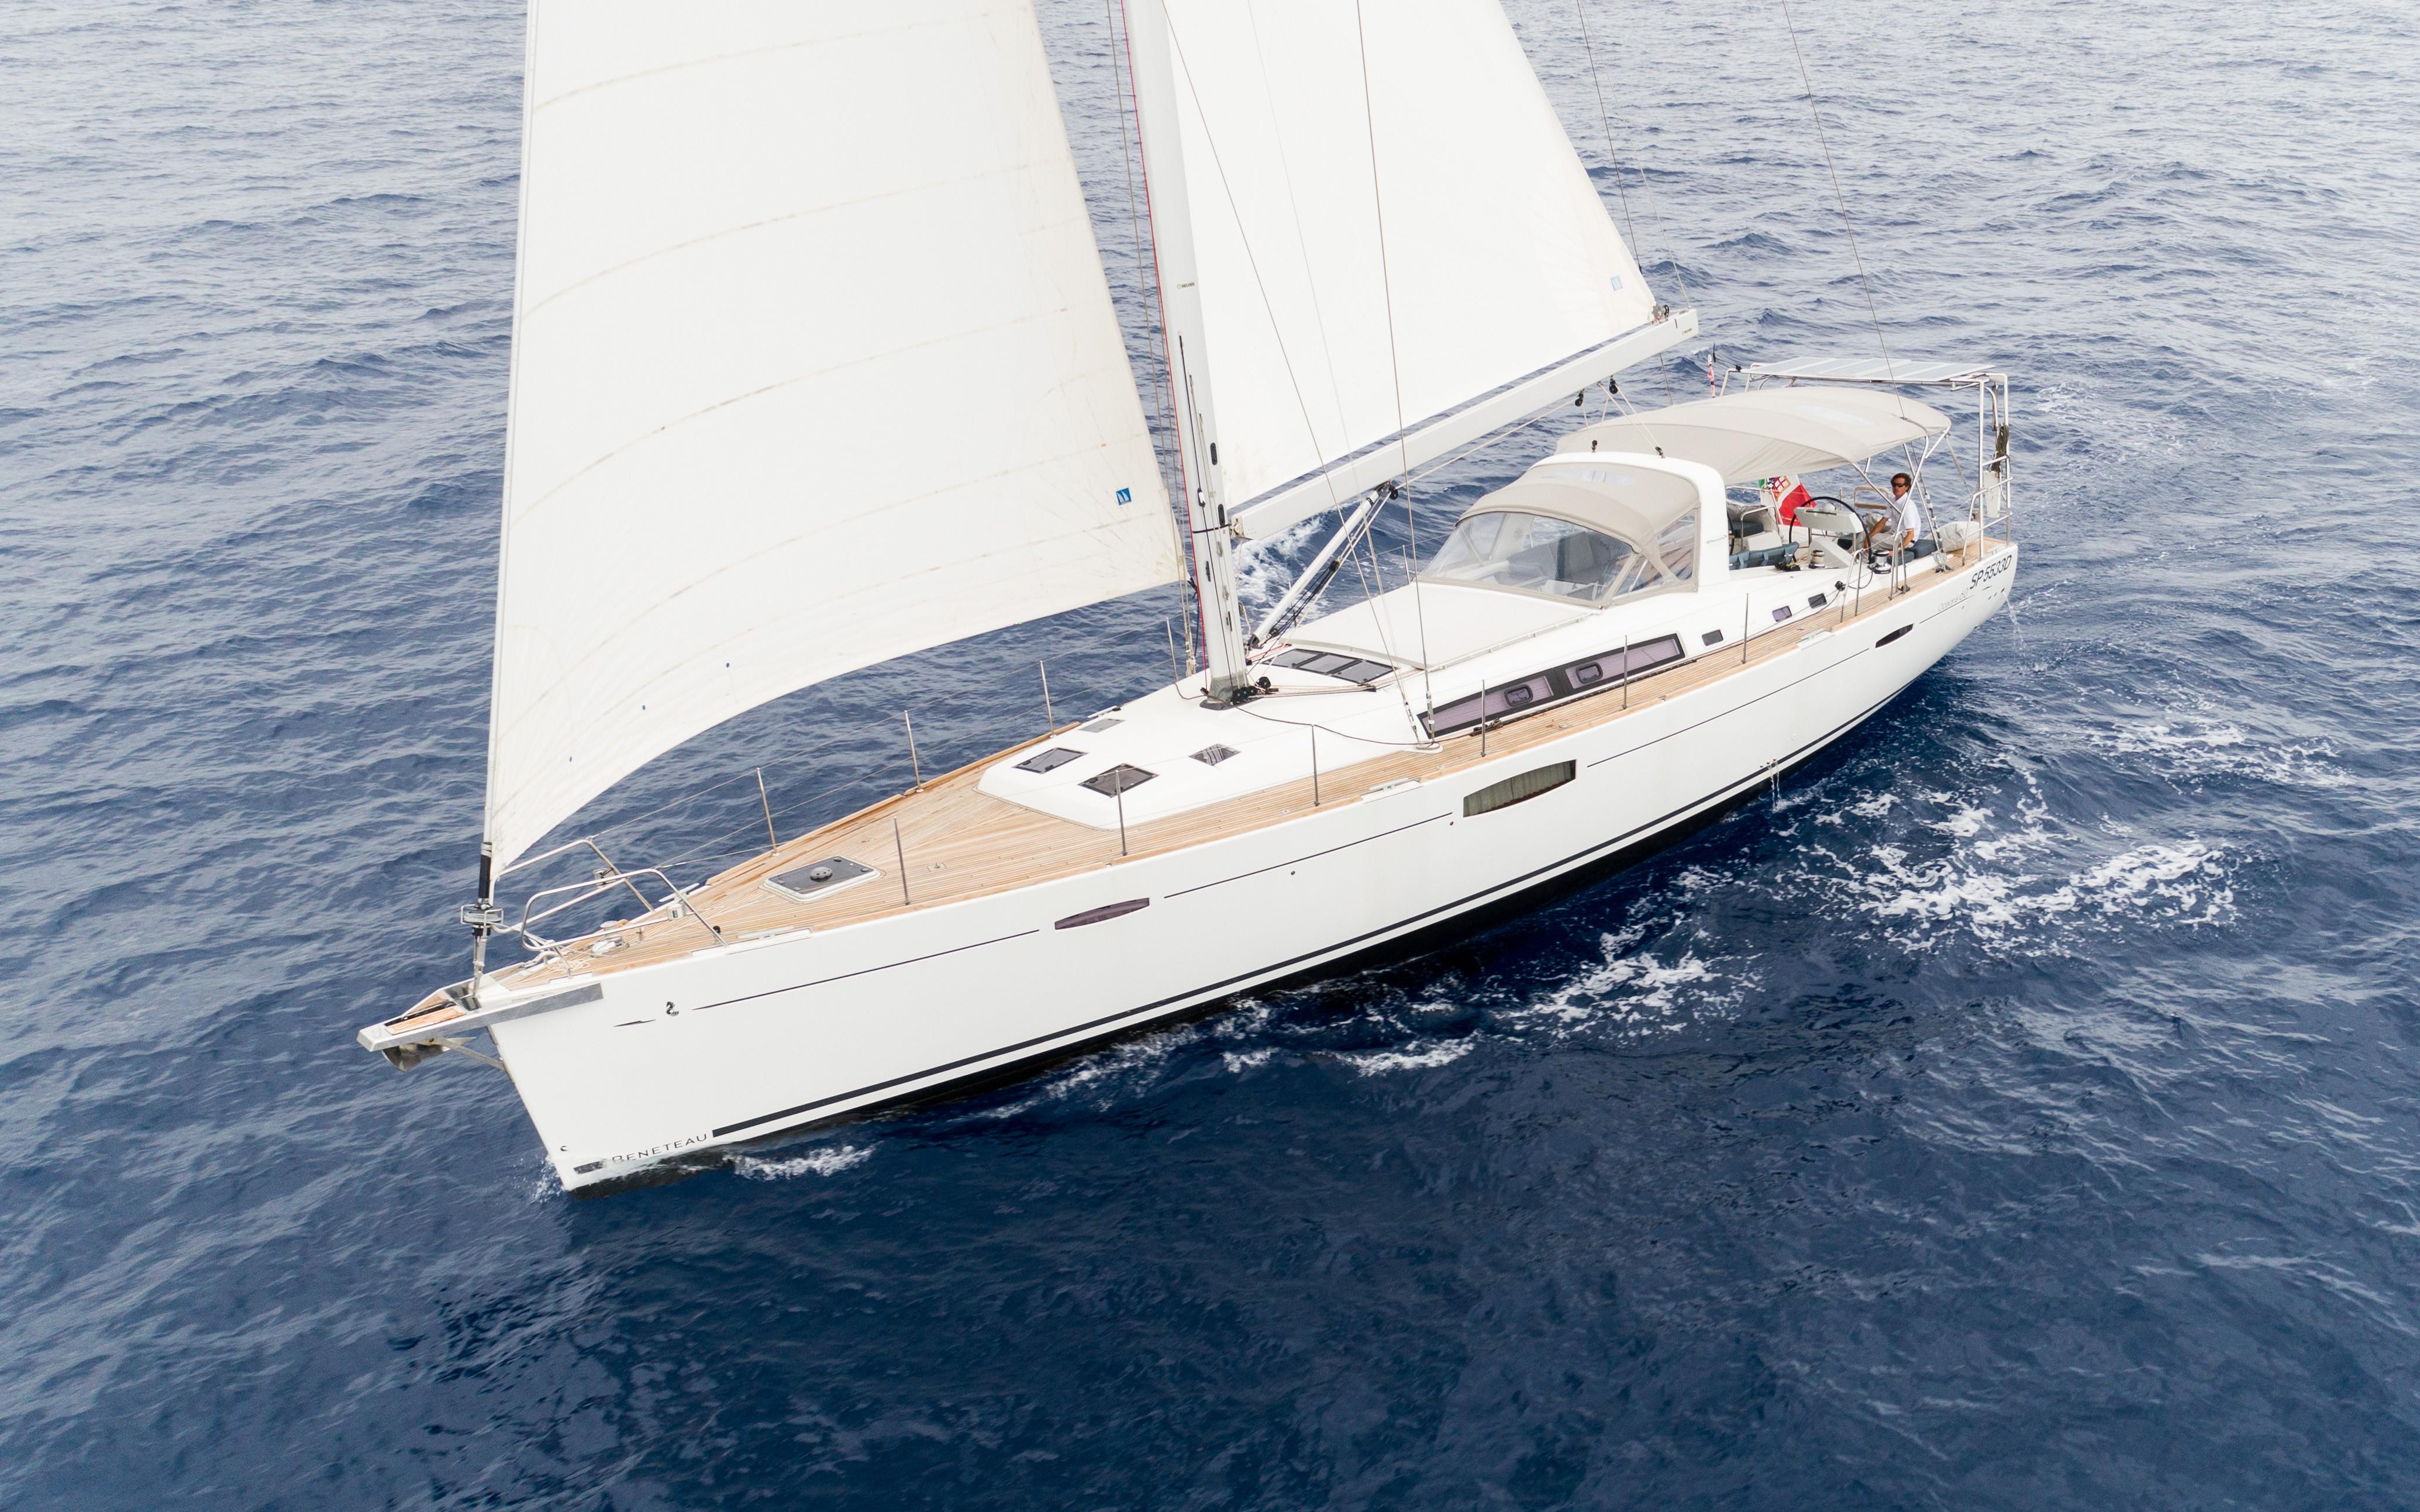 Alkemia Beneteau 2016 Oceanis 60 60 Yacht for Sale in US